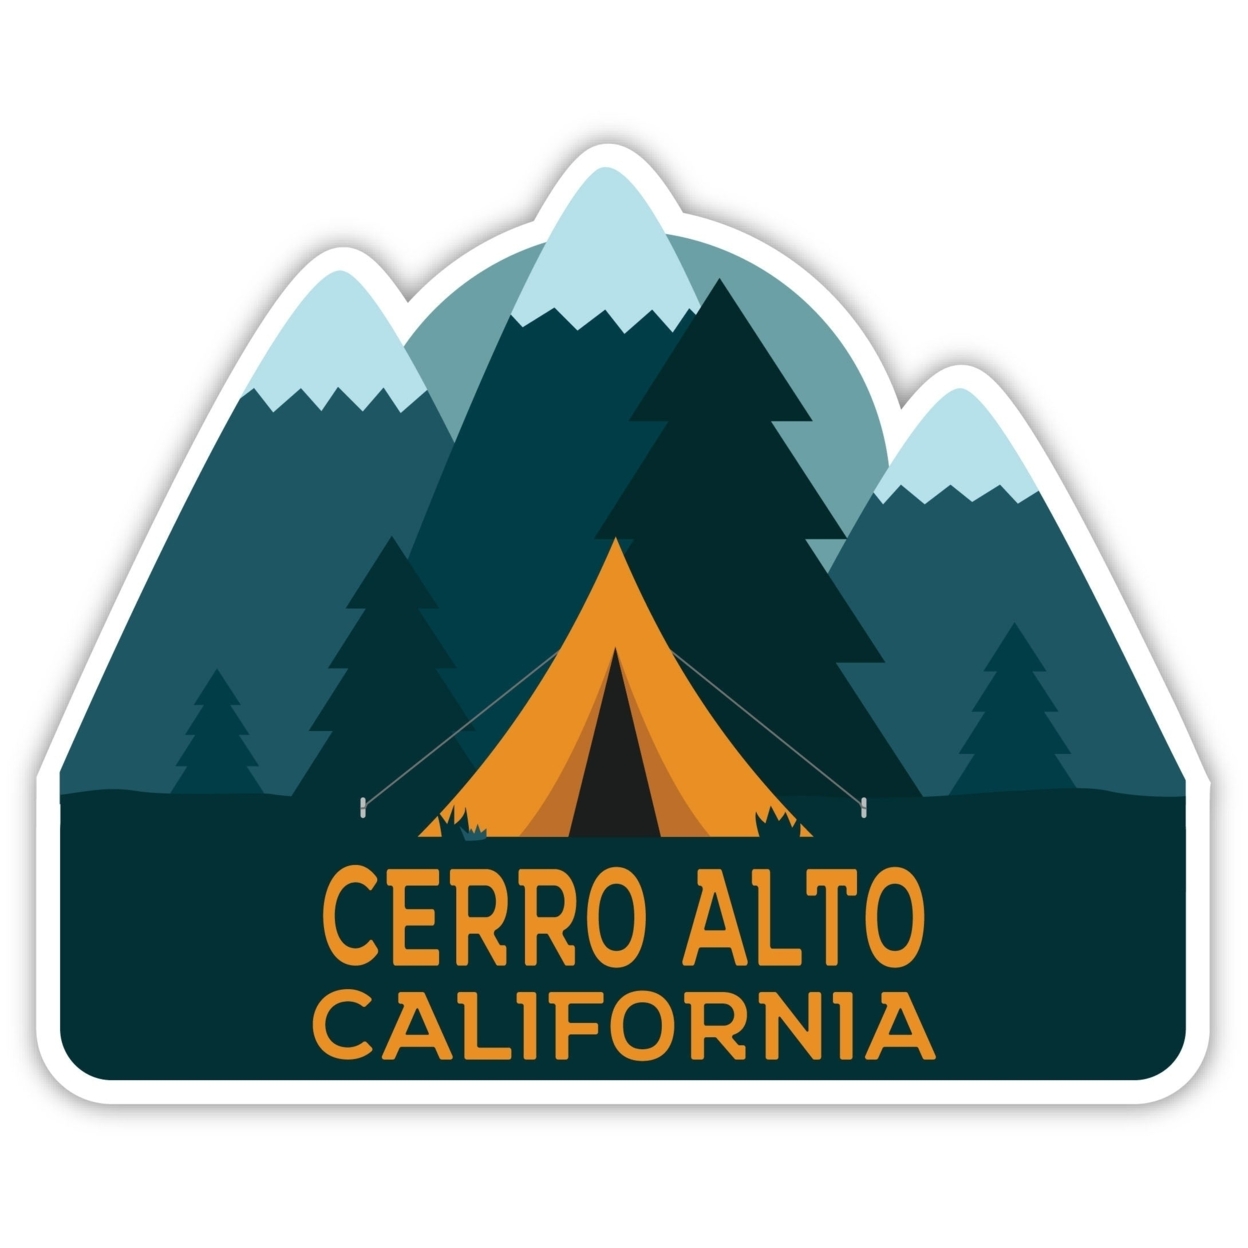 Cerro Alto California Souvenir Decorative Stickers (Choose Theme And Size) - Single Unit, 4-Inch, Tent